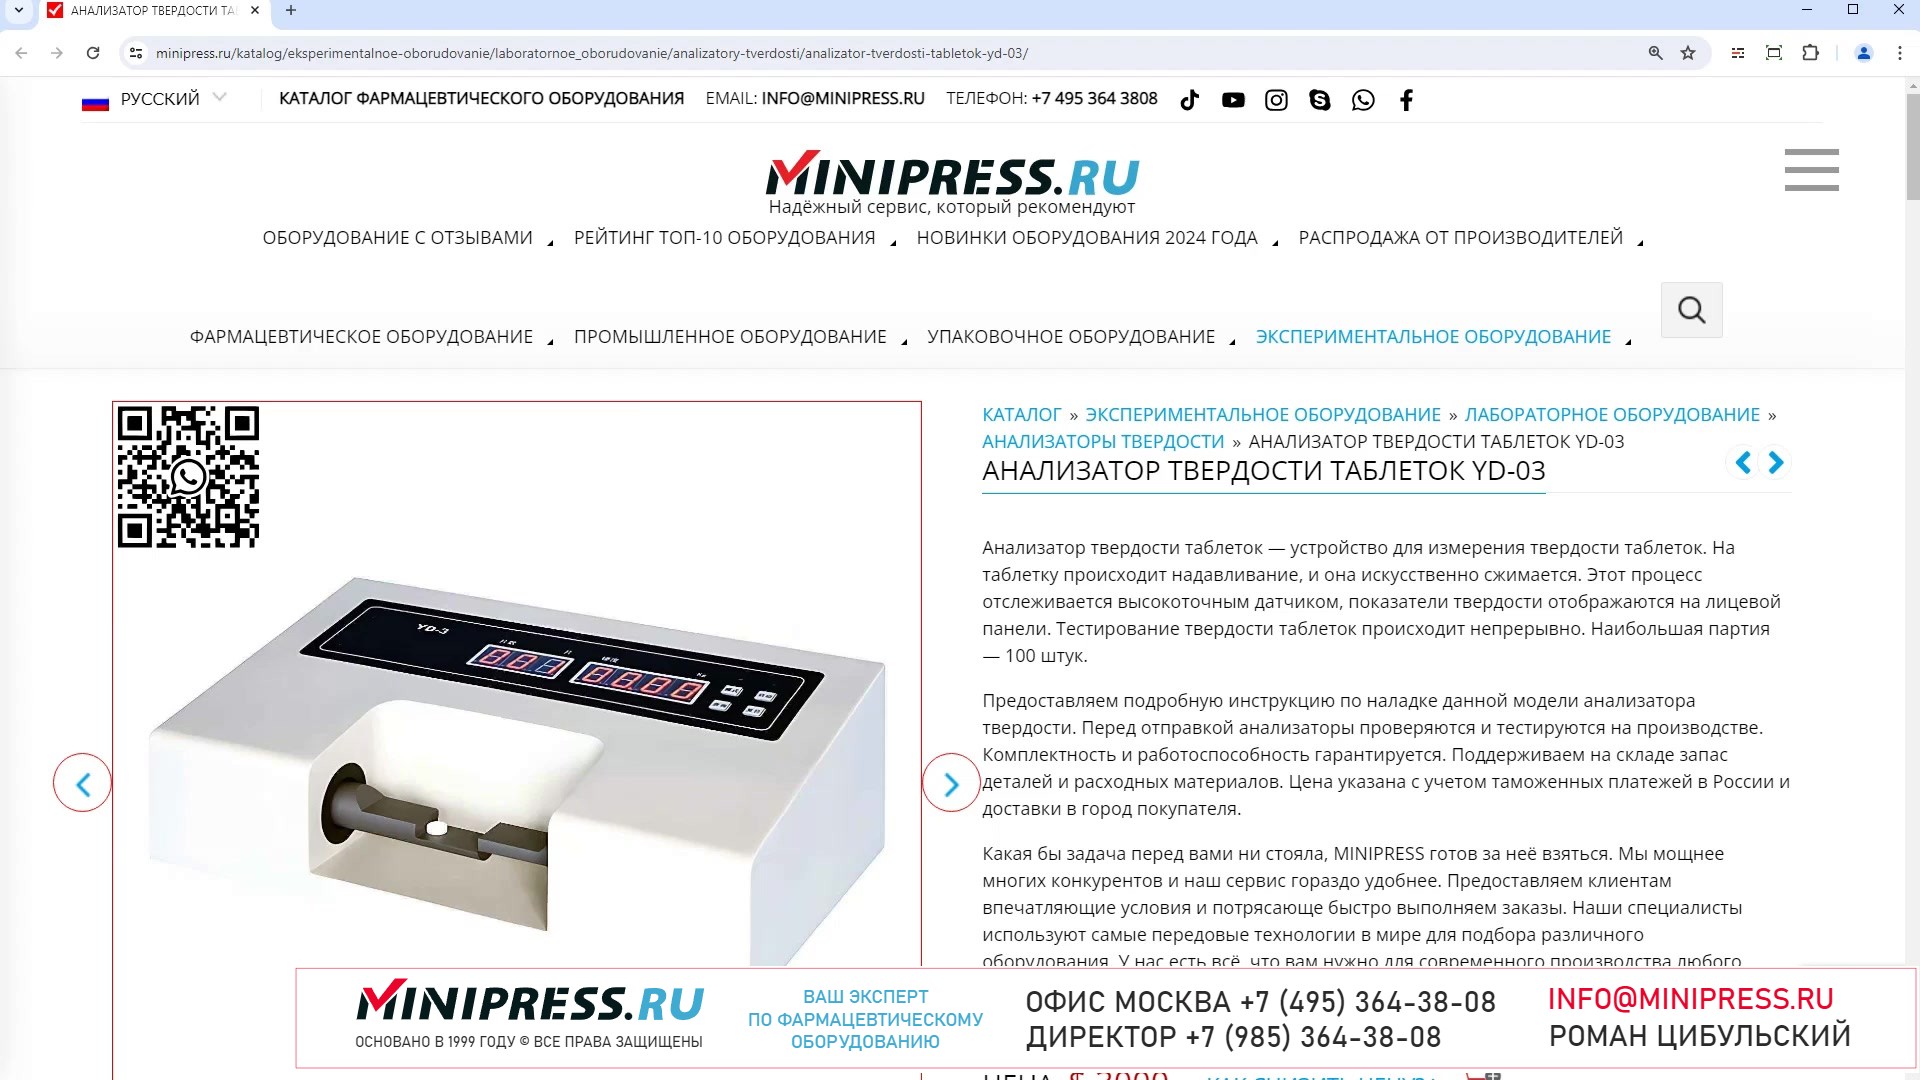 Minipress.ru Анализатор твердости таблеток YD-03